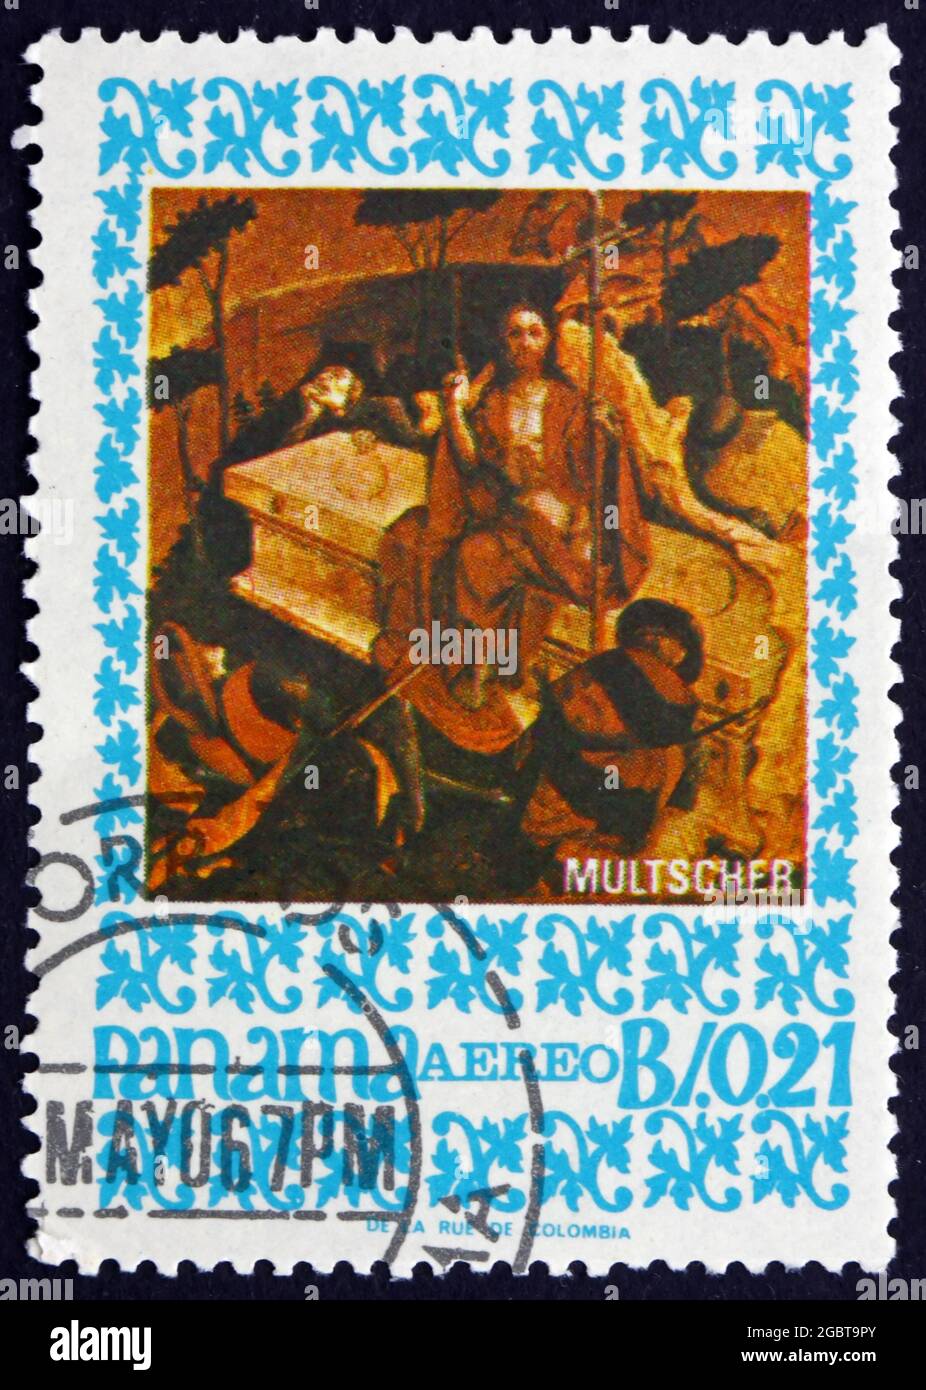 PANAMA - VERS 1967: Un timbre imprimé au Panama montre le Christ surgi, peinture par Hans Multscher, sculpteur et peintre allemand, vers 1967 Banque D'Images